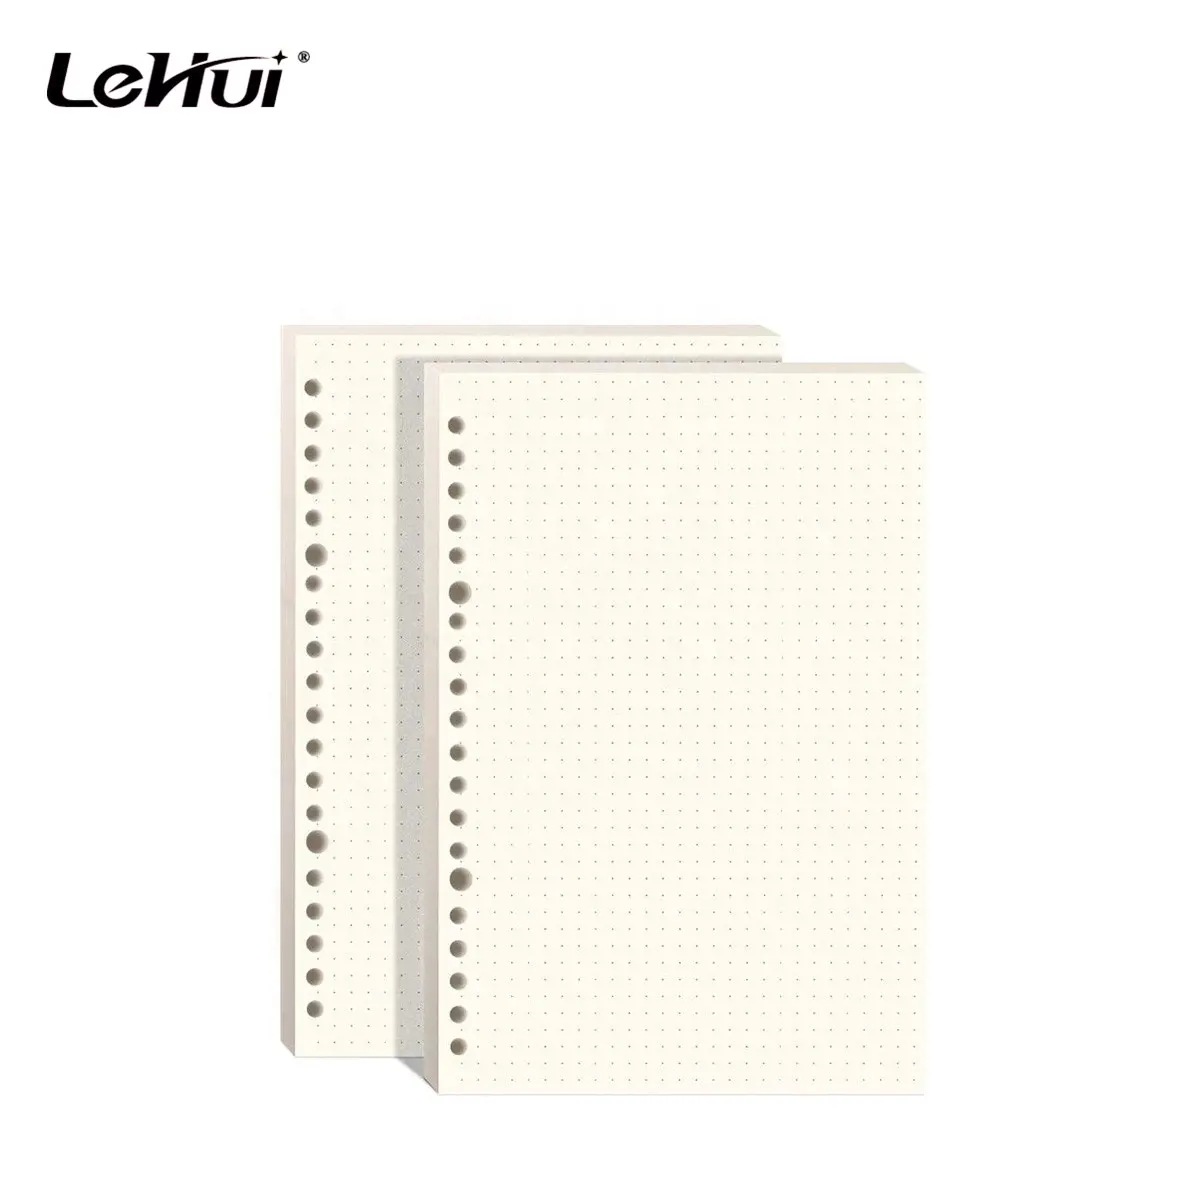 Chinesischer Lieferant Weiß 6 3/4x4 1/8 Zoll 160 Seiten 6 Löcher ausgekleidet Nachfüll bares weißes Loseblatt-Füll papier